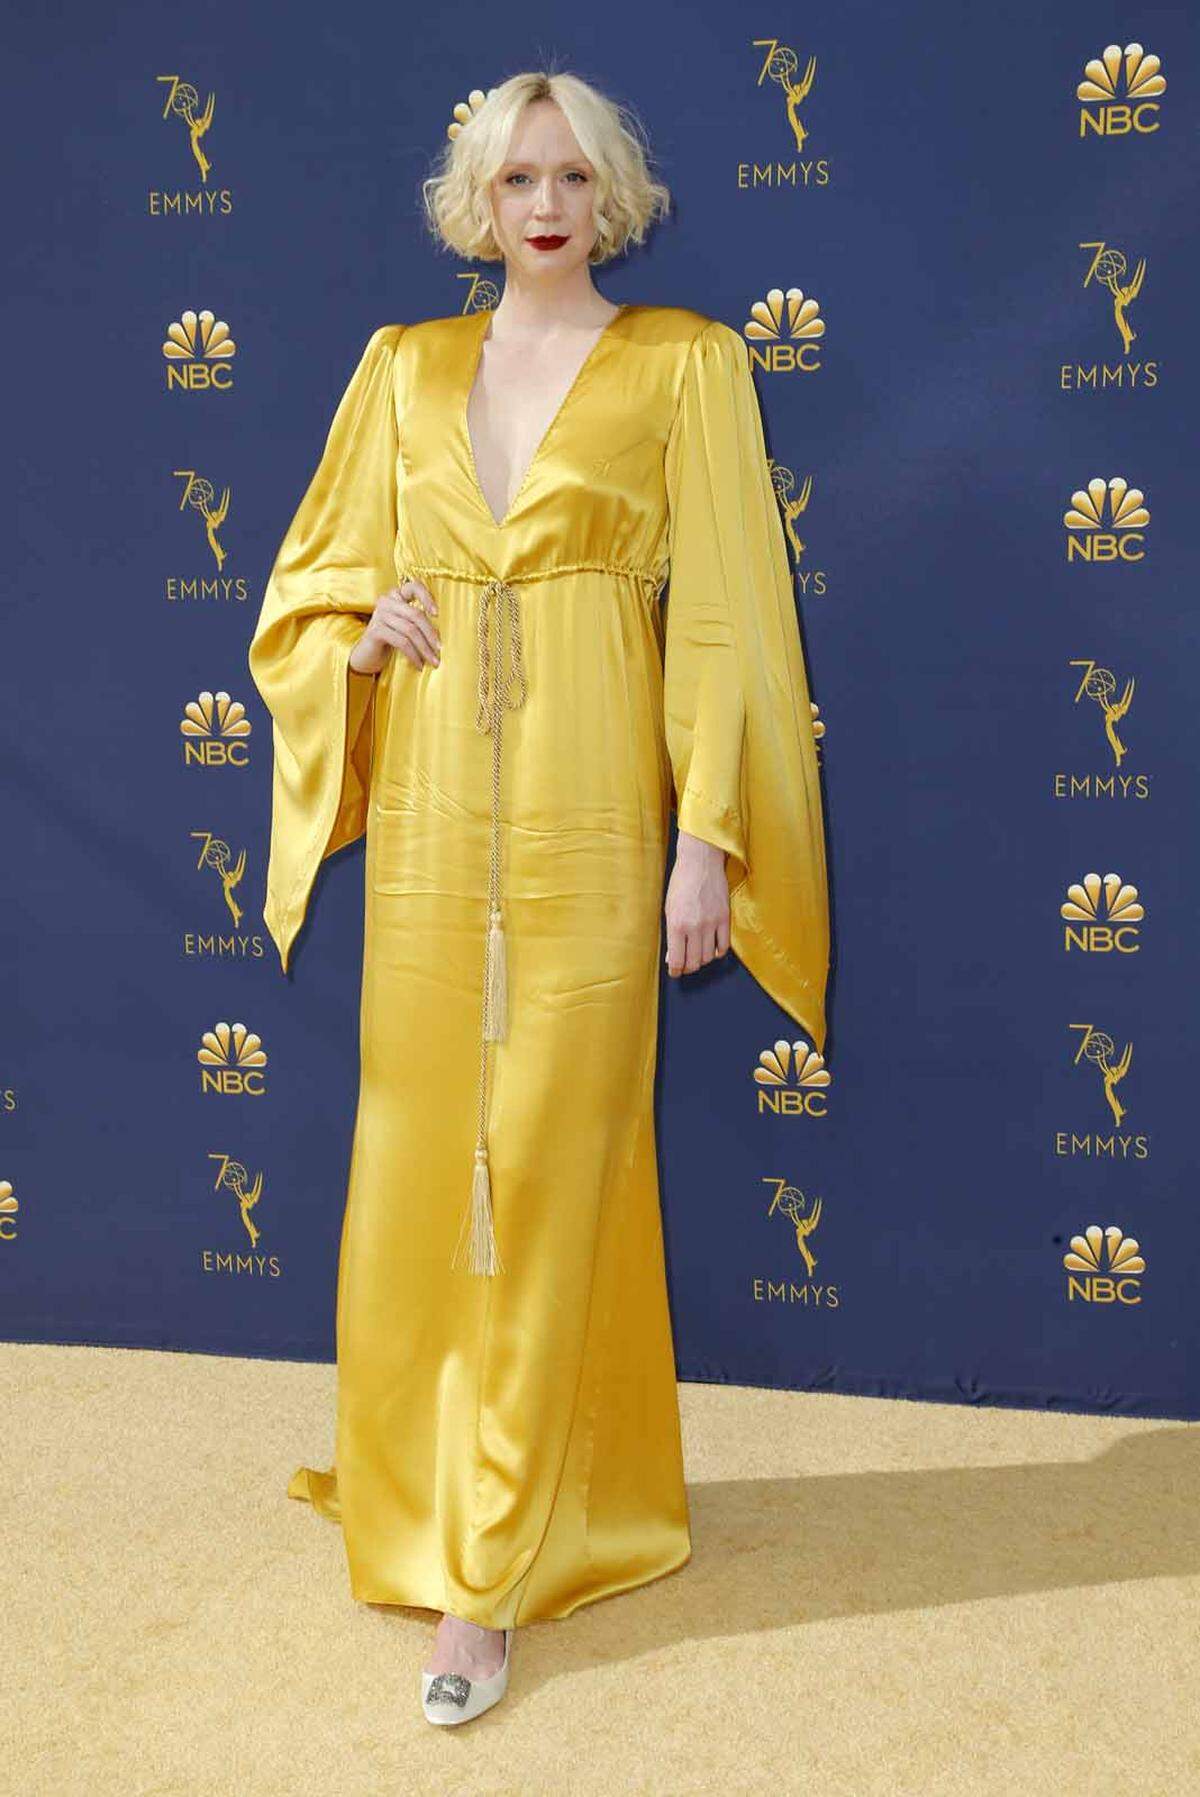 Ganze zwei Stunden soll Gwendoline Christie geweint haben, nachdem sie die Ritterrüstung ihrer "GoT"-Figur Brienne zum letzten Mal abgenommen hatte. Im Microsoft Theater in Los Angeles strahlte sie wie eine griechische Göttin.